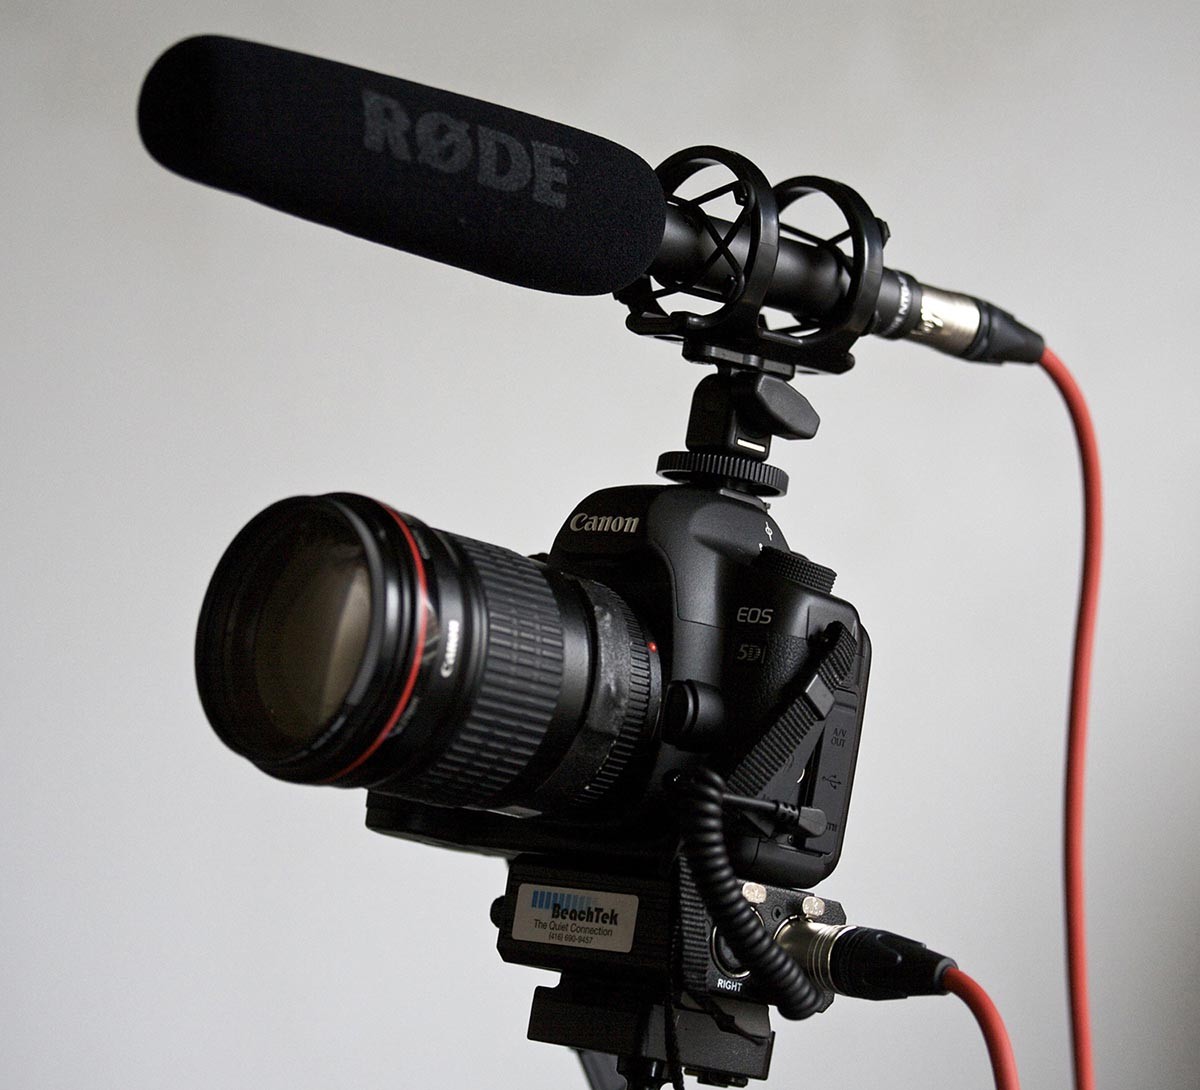 Microphone Canon à Condensateur Alimentation Fantôme - SL Technologie